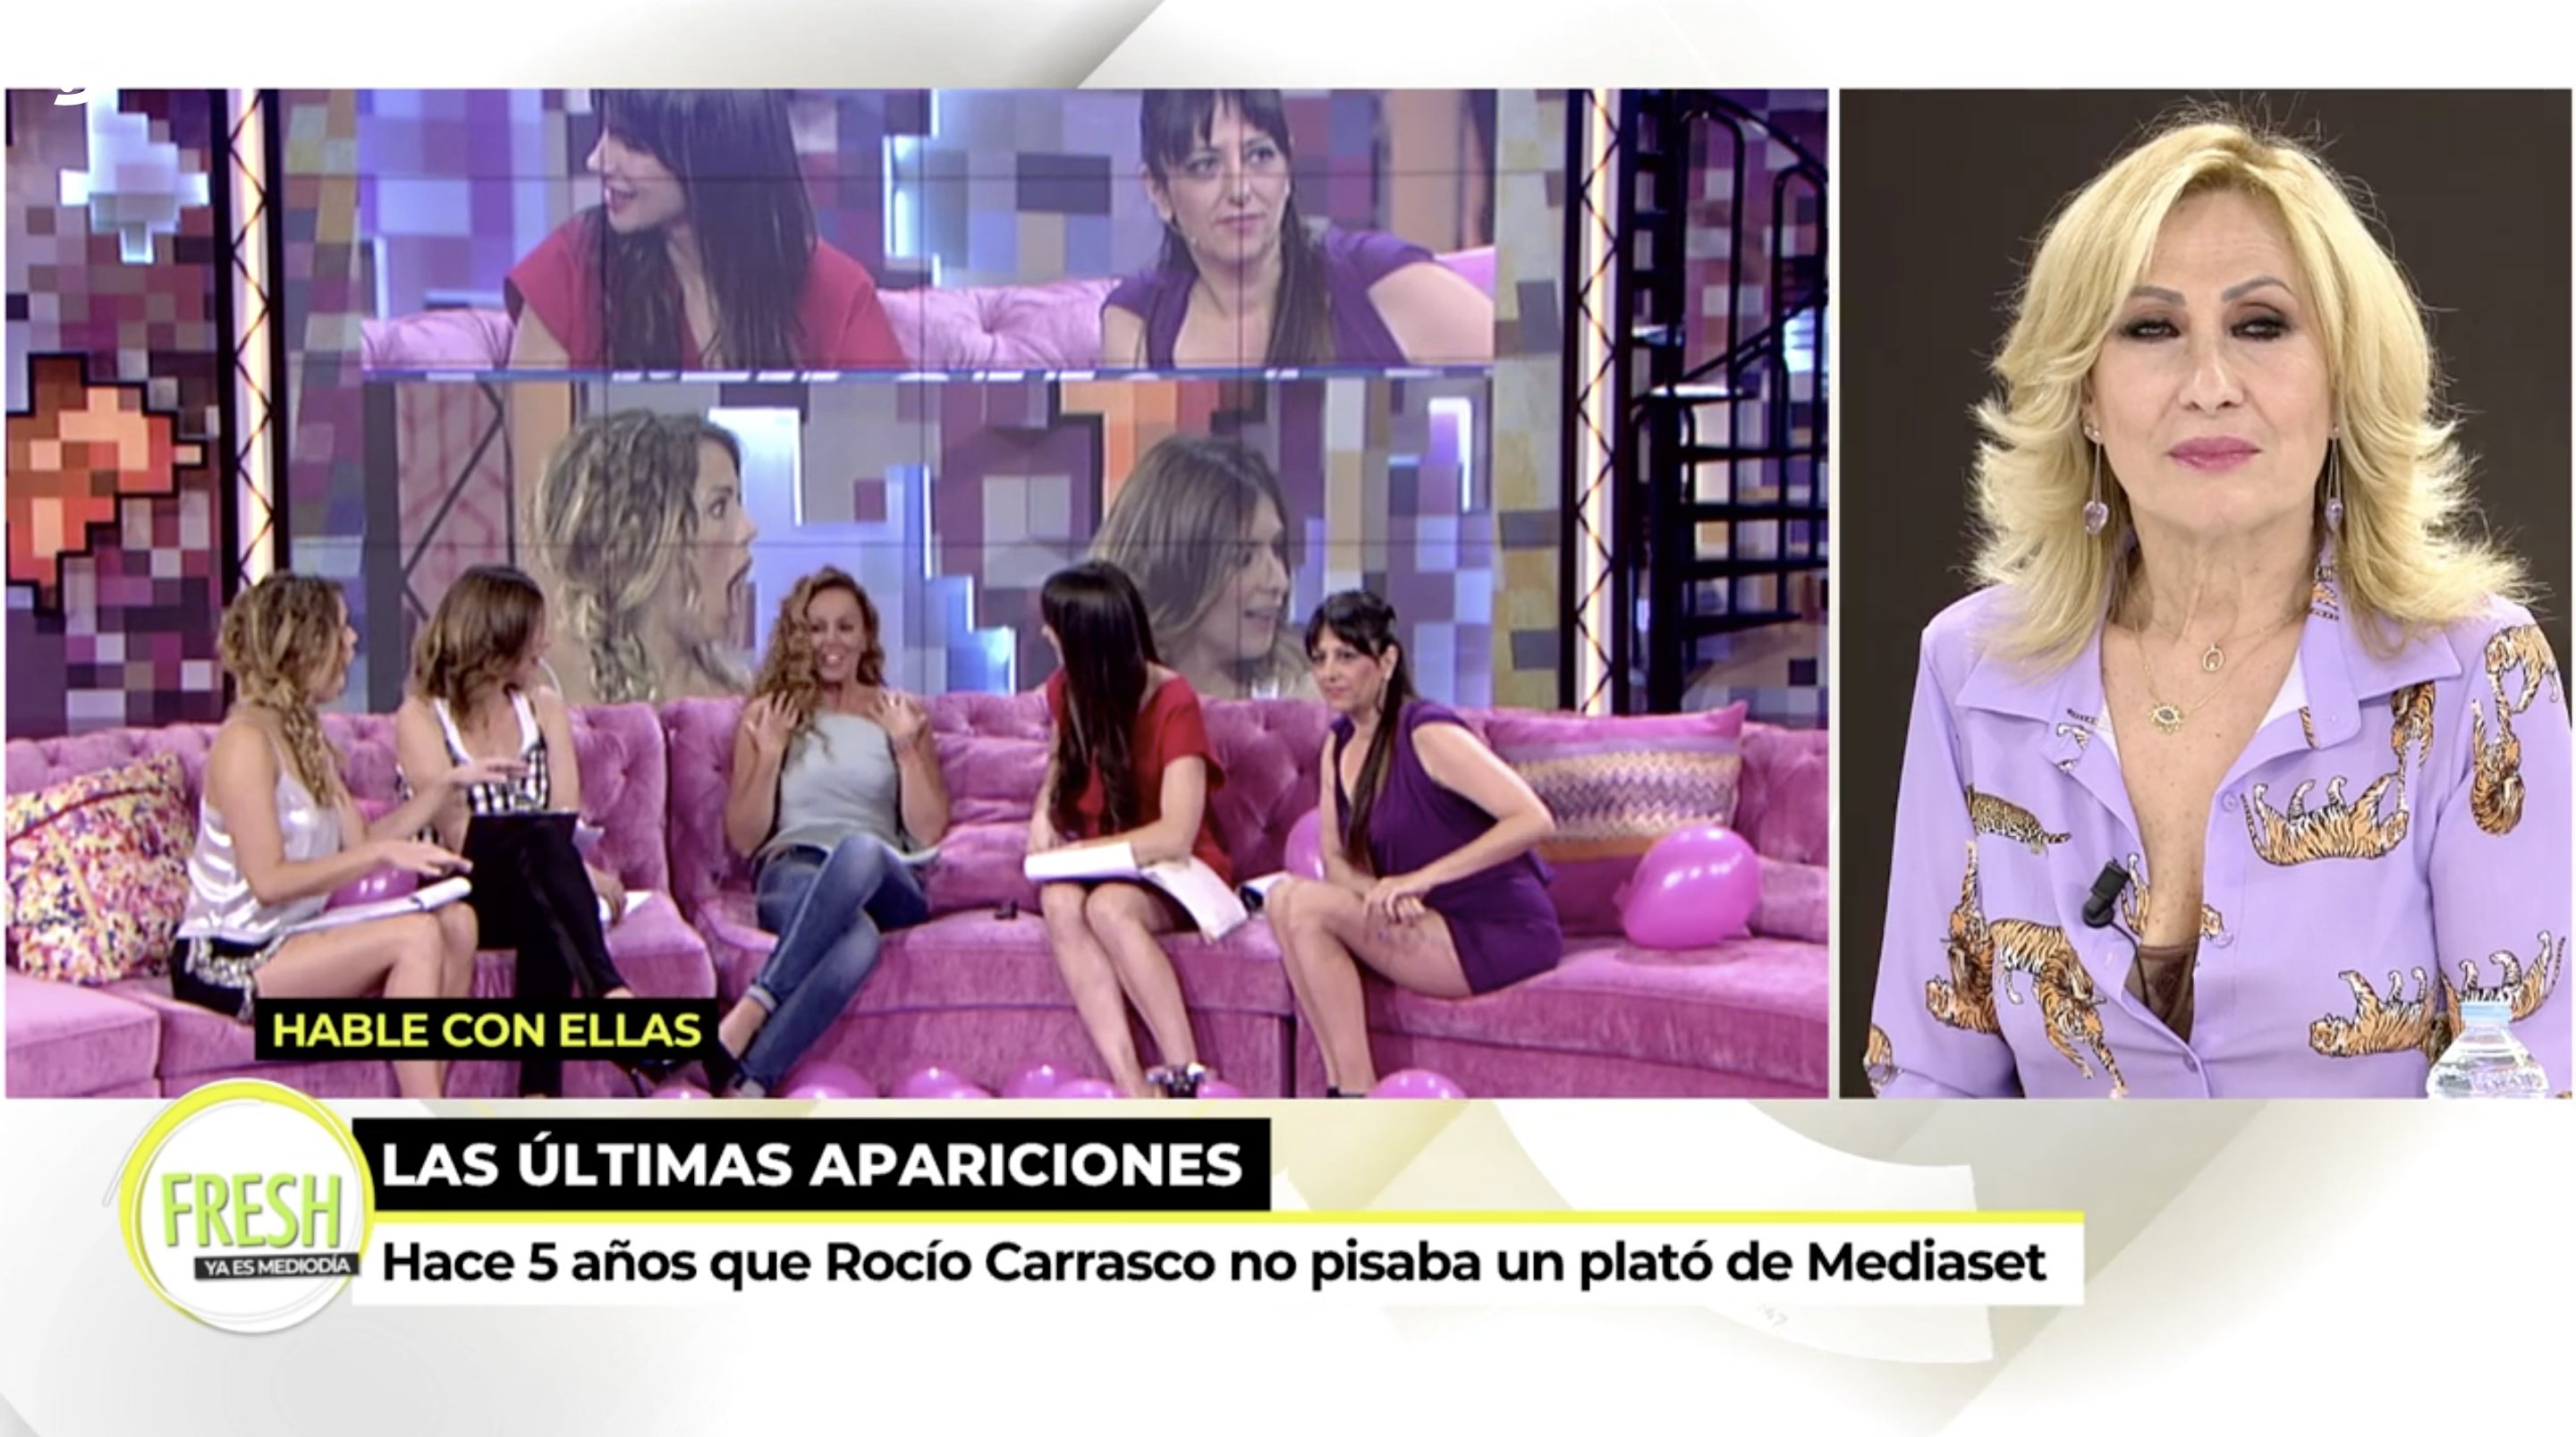 La última aparición de Rocío Carrasco en Telecinco fue en 2016 | Foto: Telecinco.es